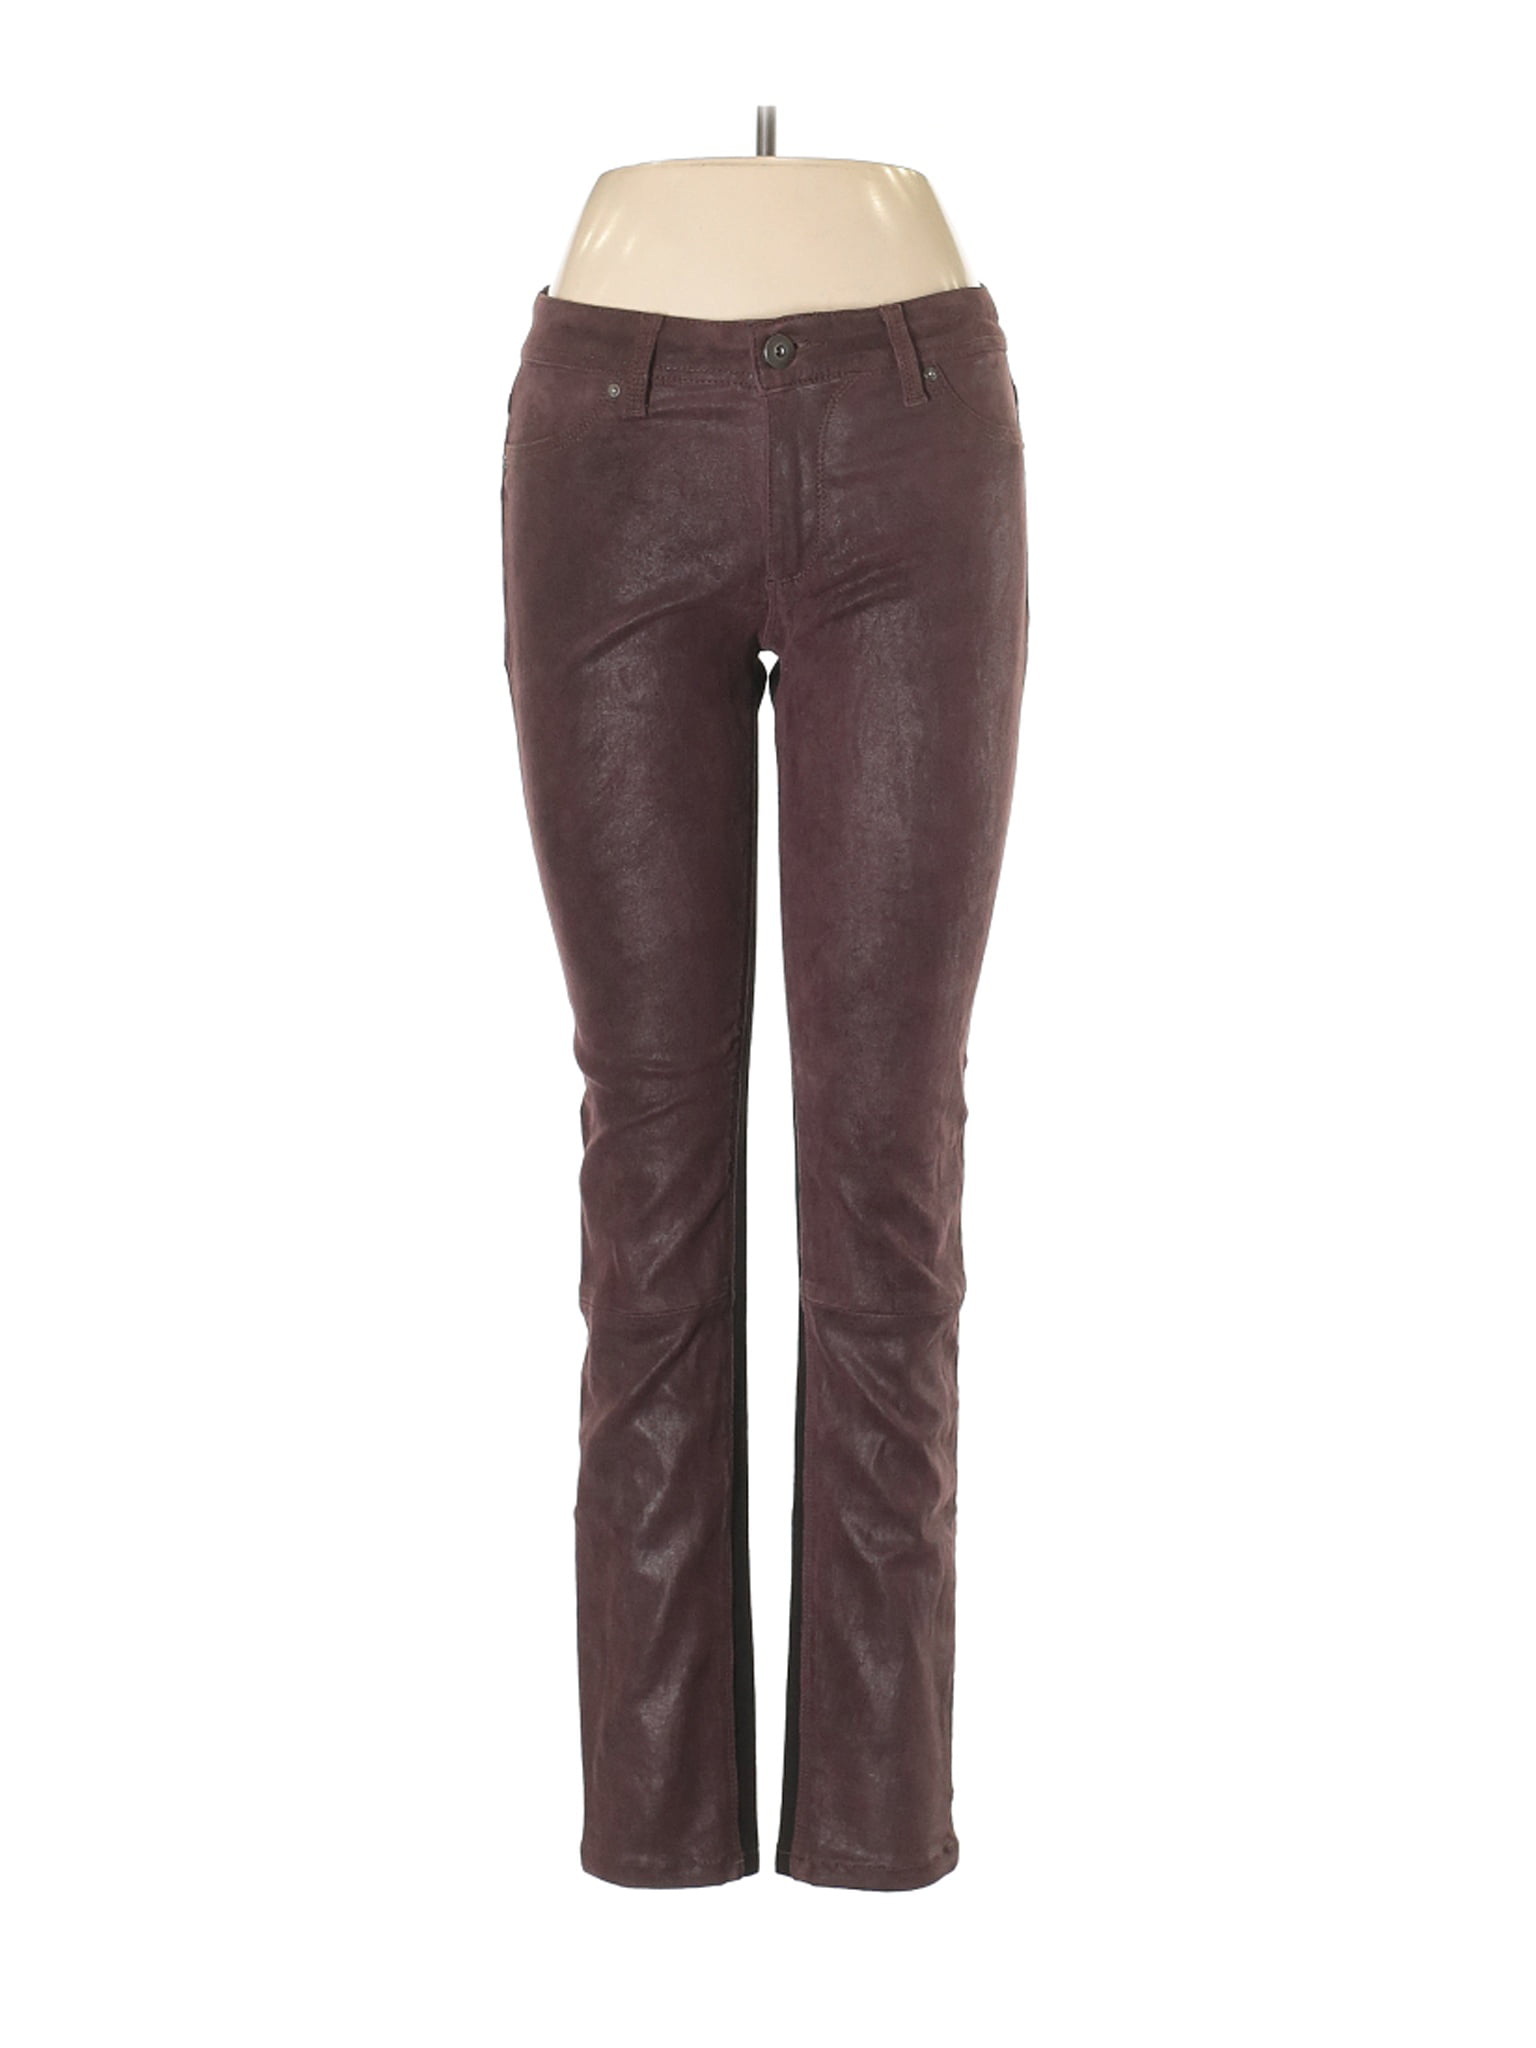 dl1961 leather pants